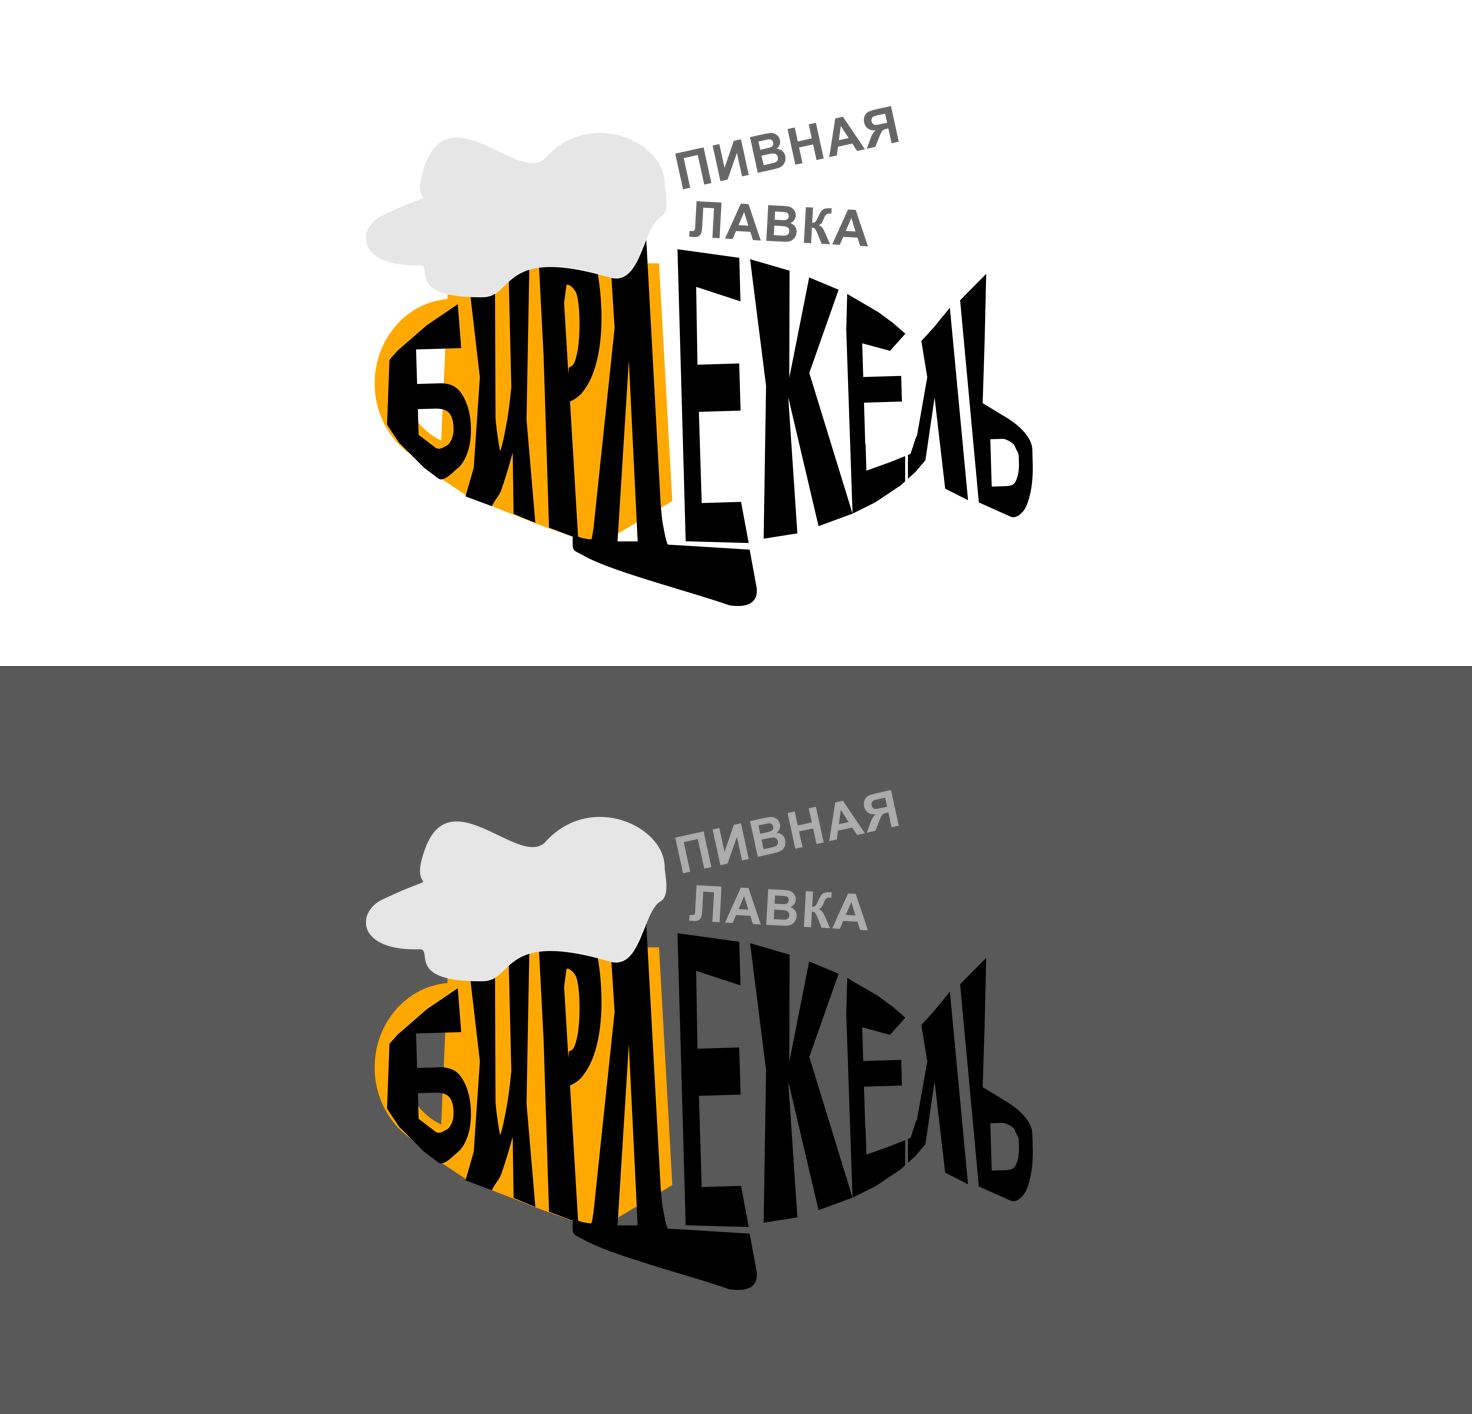 Лого и фирменный стиль для Бирдекель - дизайнер krislug